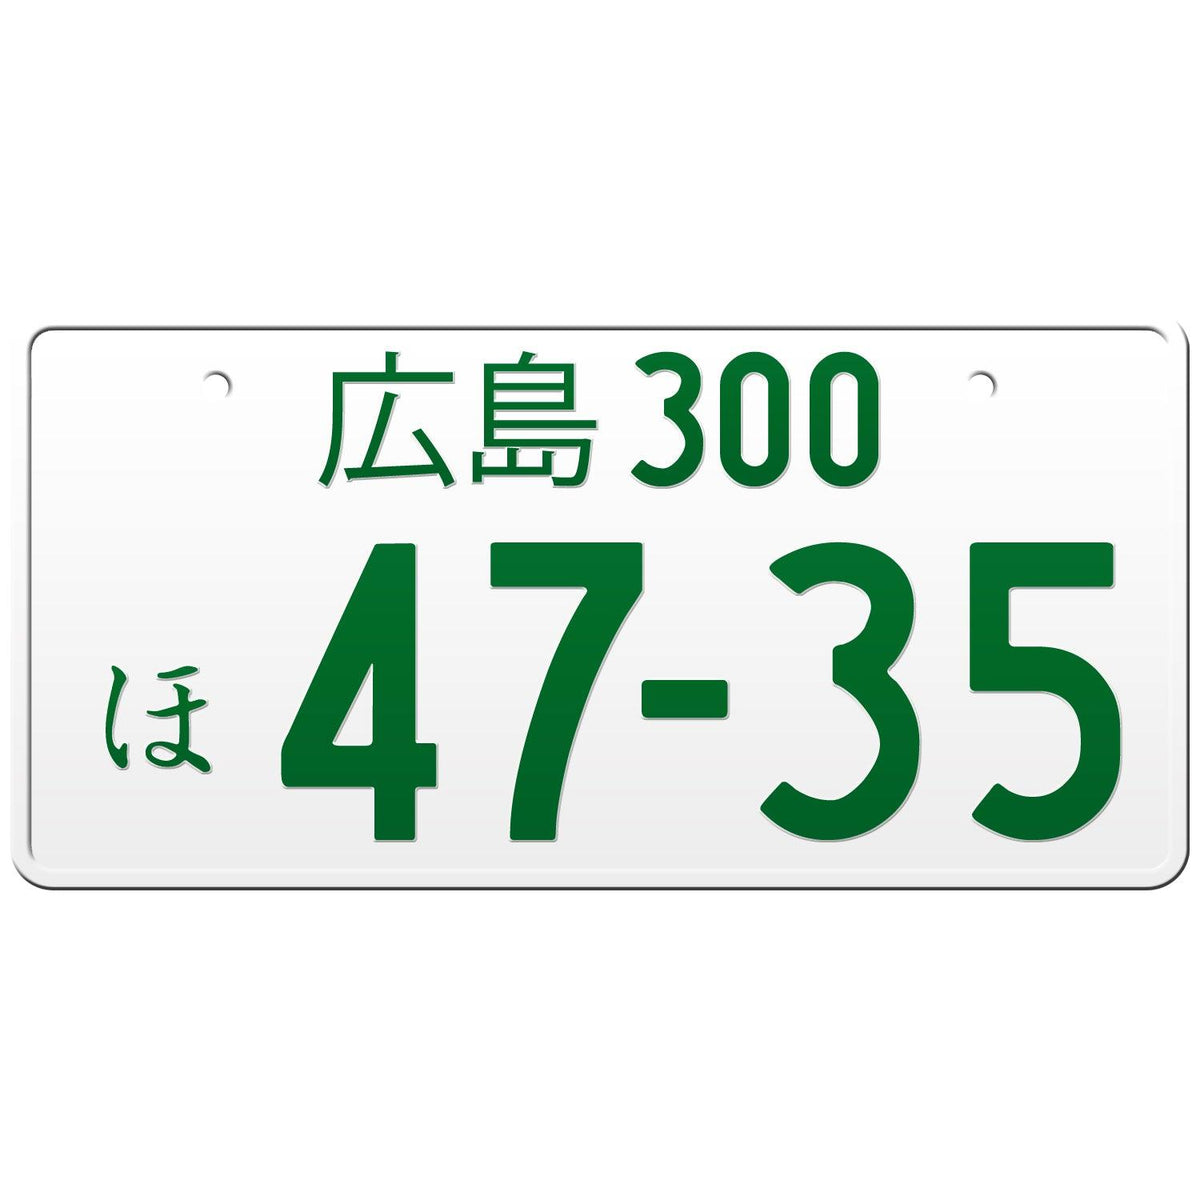 広島 Hiroshima Japanese License Plate – Japan License Plate